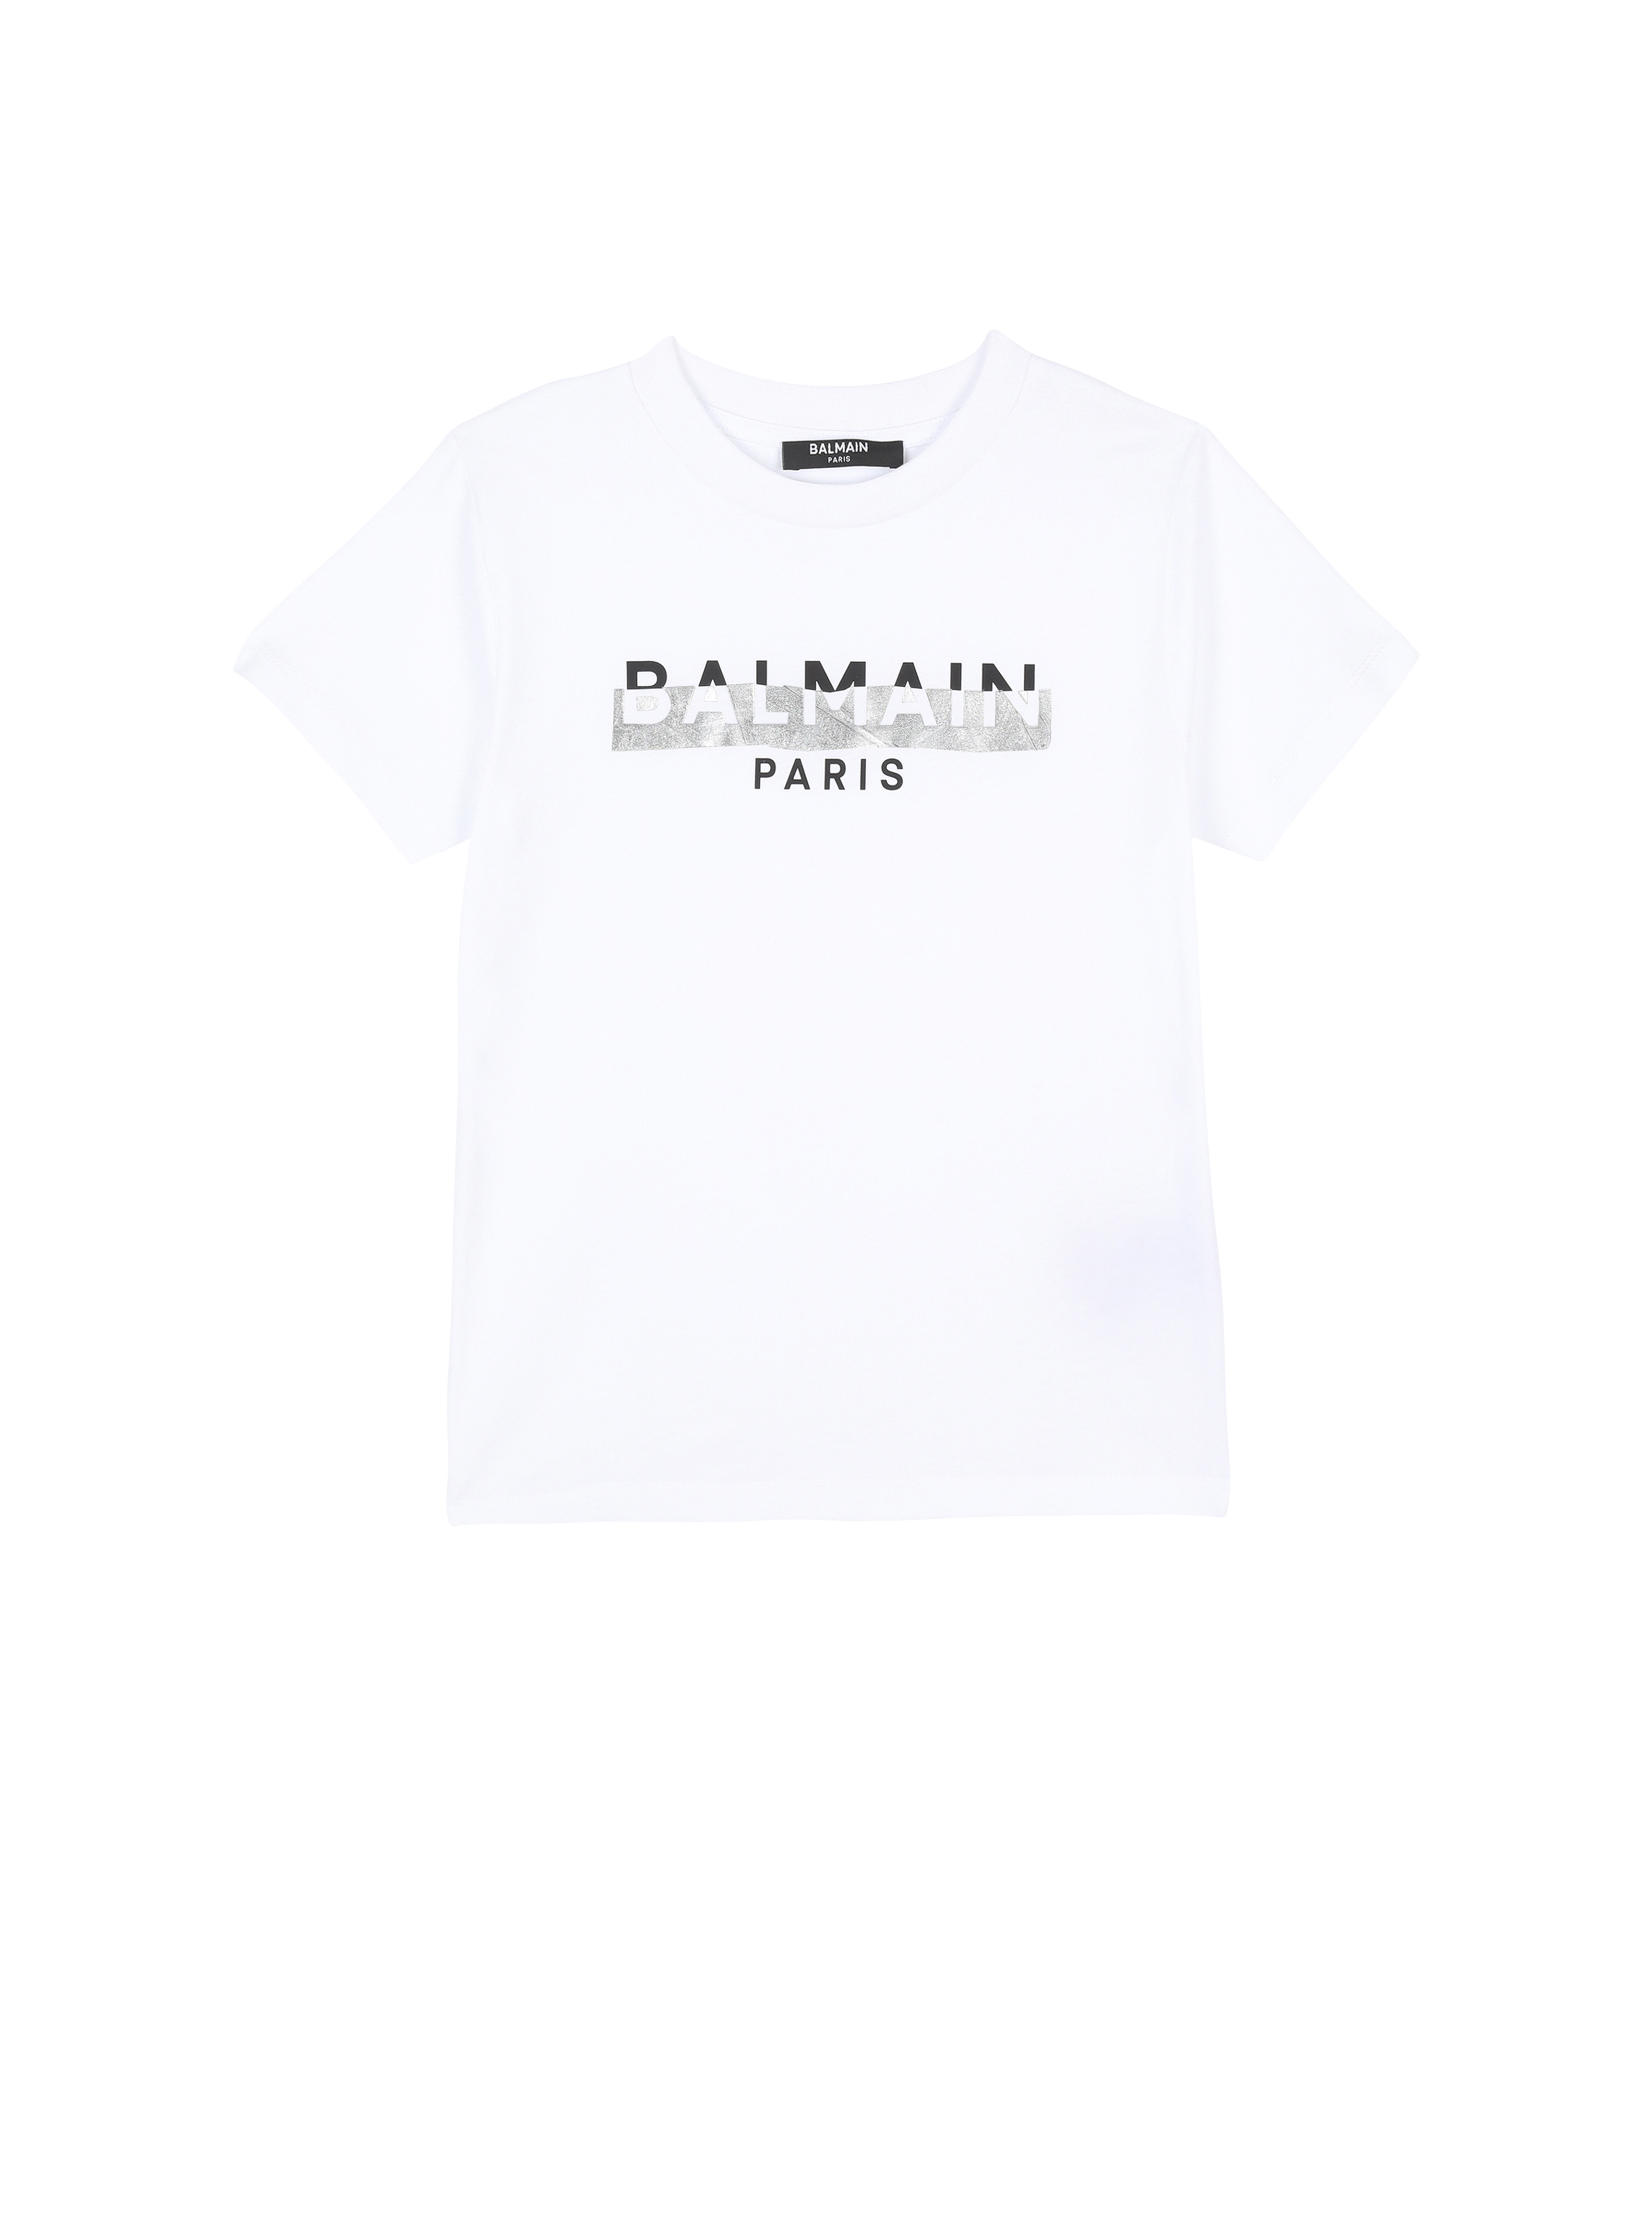 Cotton T-shirt with Balmain logo, white